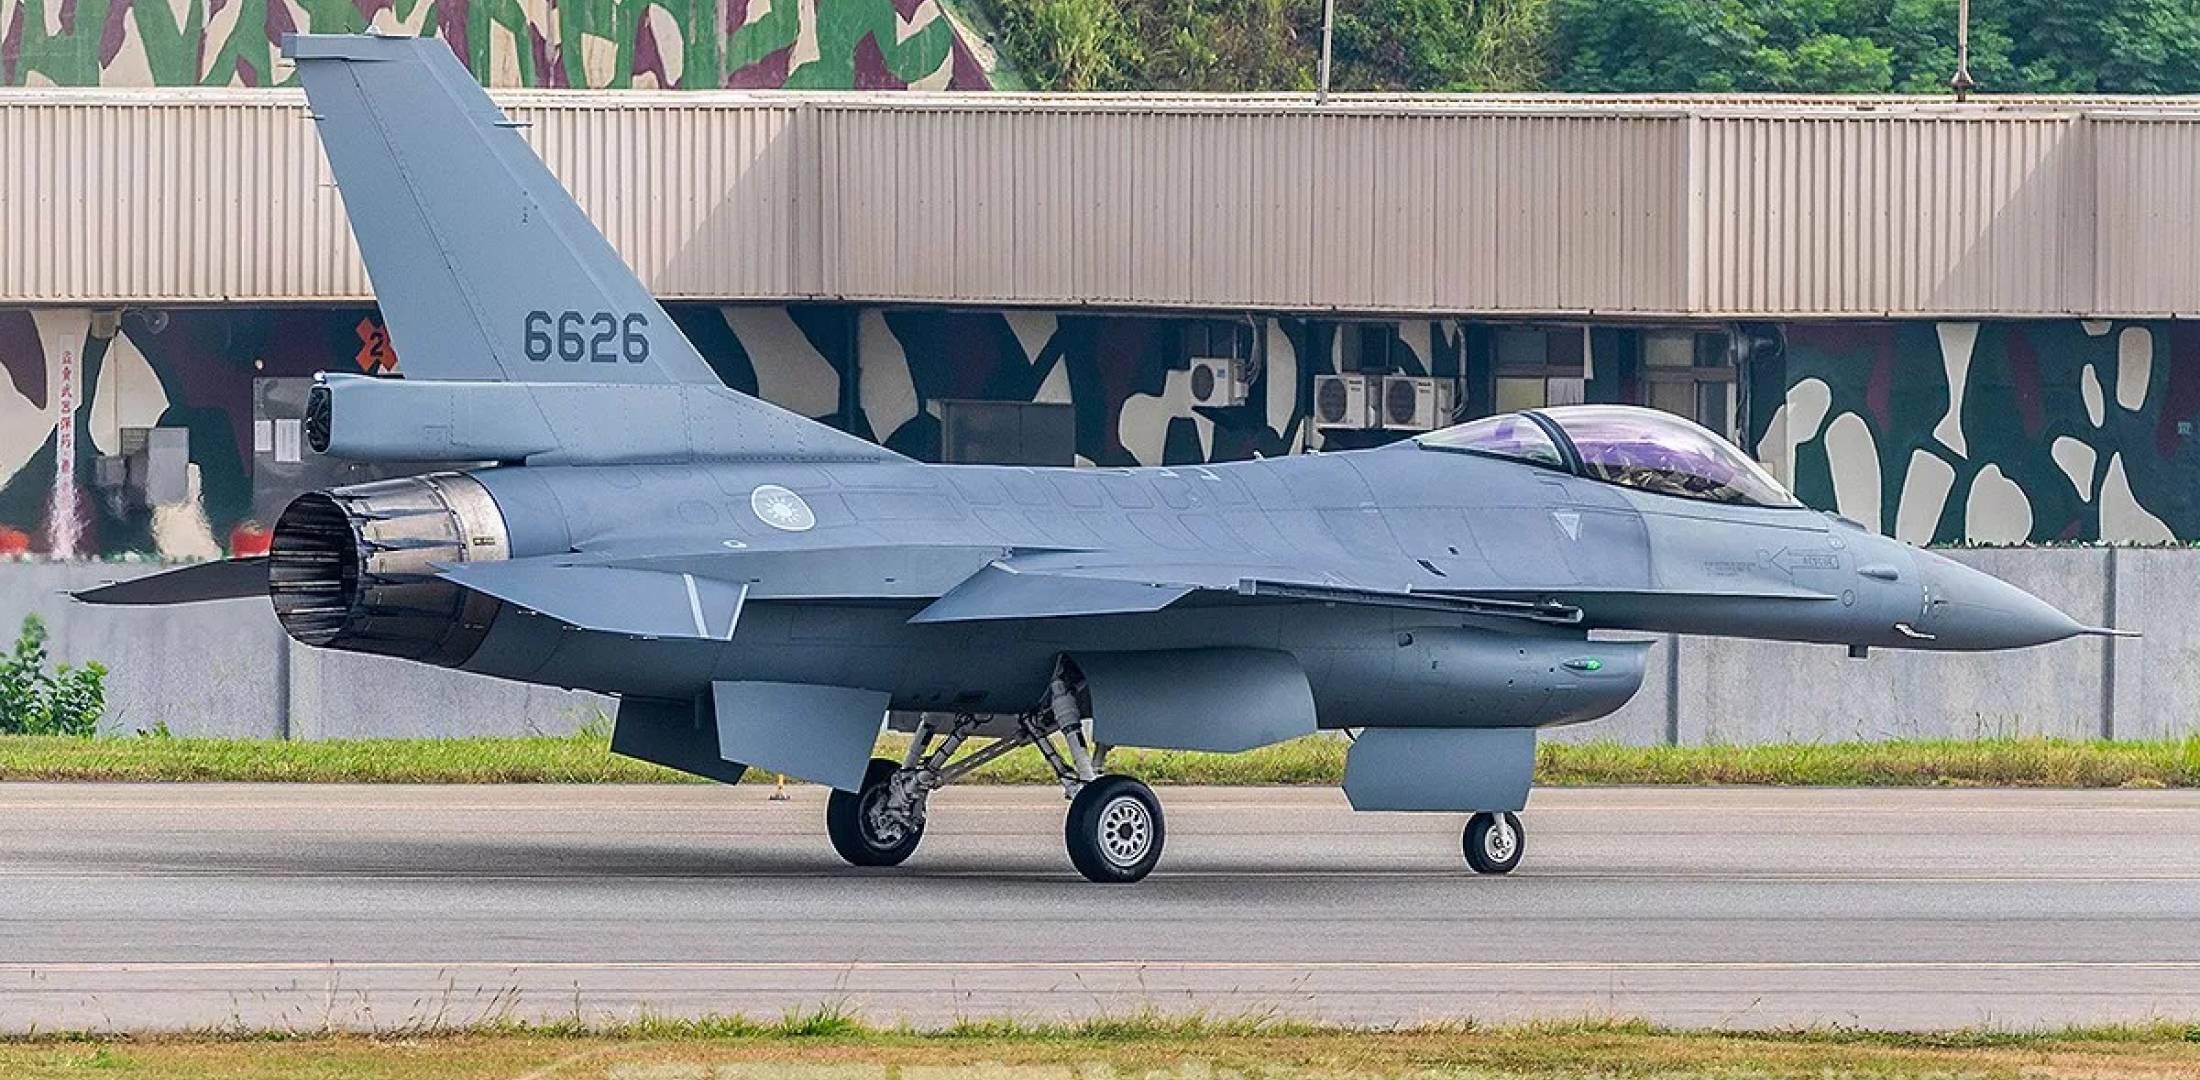 Đài Loan sở hữu các chiến đấu cơ F-16V, phiên bản F-16 nâng cấp mới&nbsp;nhất do Mỹ sản xuất.